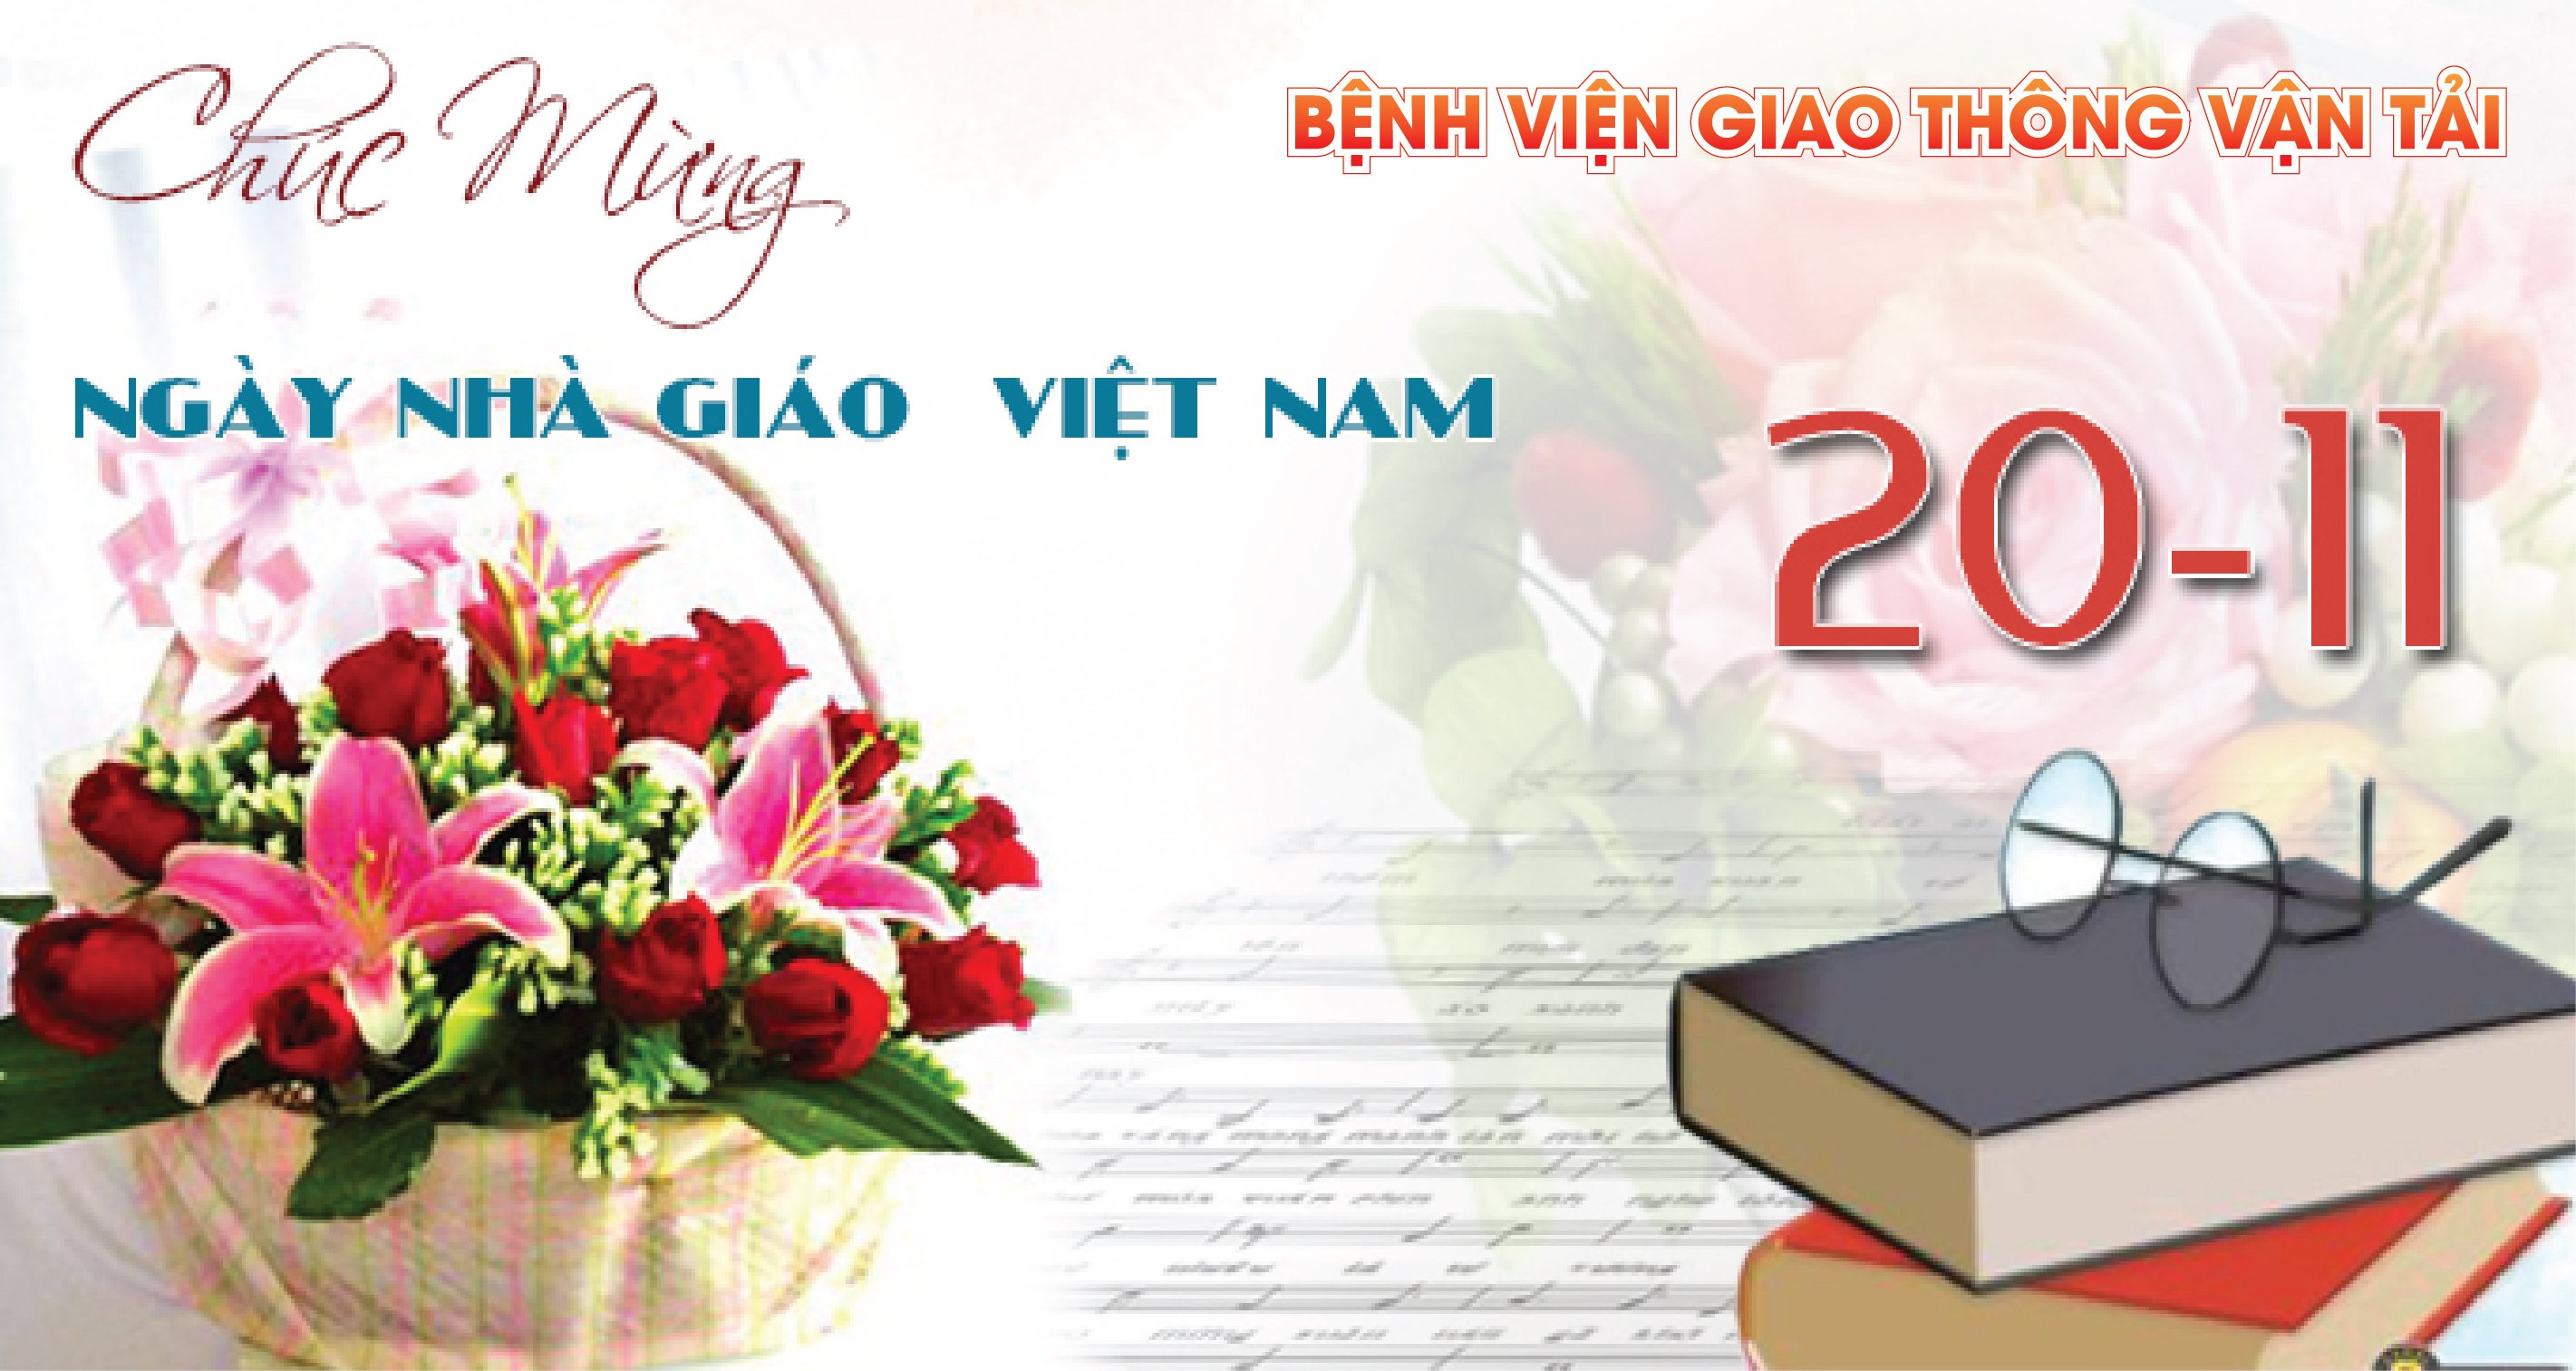 Ngày nhà giáo Việt Nam: Chúc mừng ngày Nhà giáo Việt Nam, ngày tôn vinh các thầy cô giáo. Cùng nhìn lại những khoảnh khắc đầy cảm xúc với những người thầy thân yêu và đón nhận những lời chúc tốt đẹp nhất từ gia đình, bạn bè đến từ bức tranh ấn tượng này.